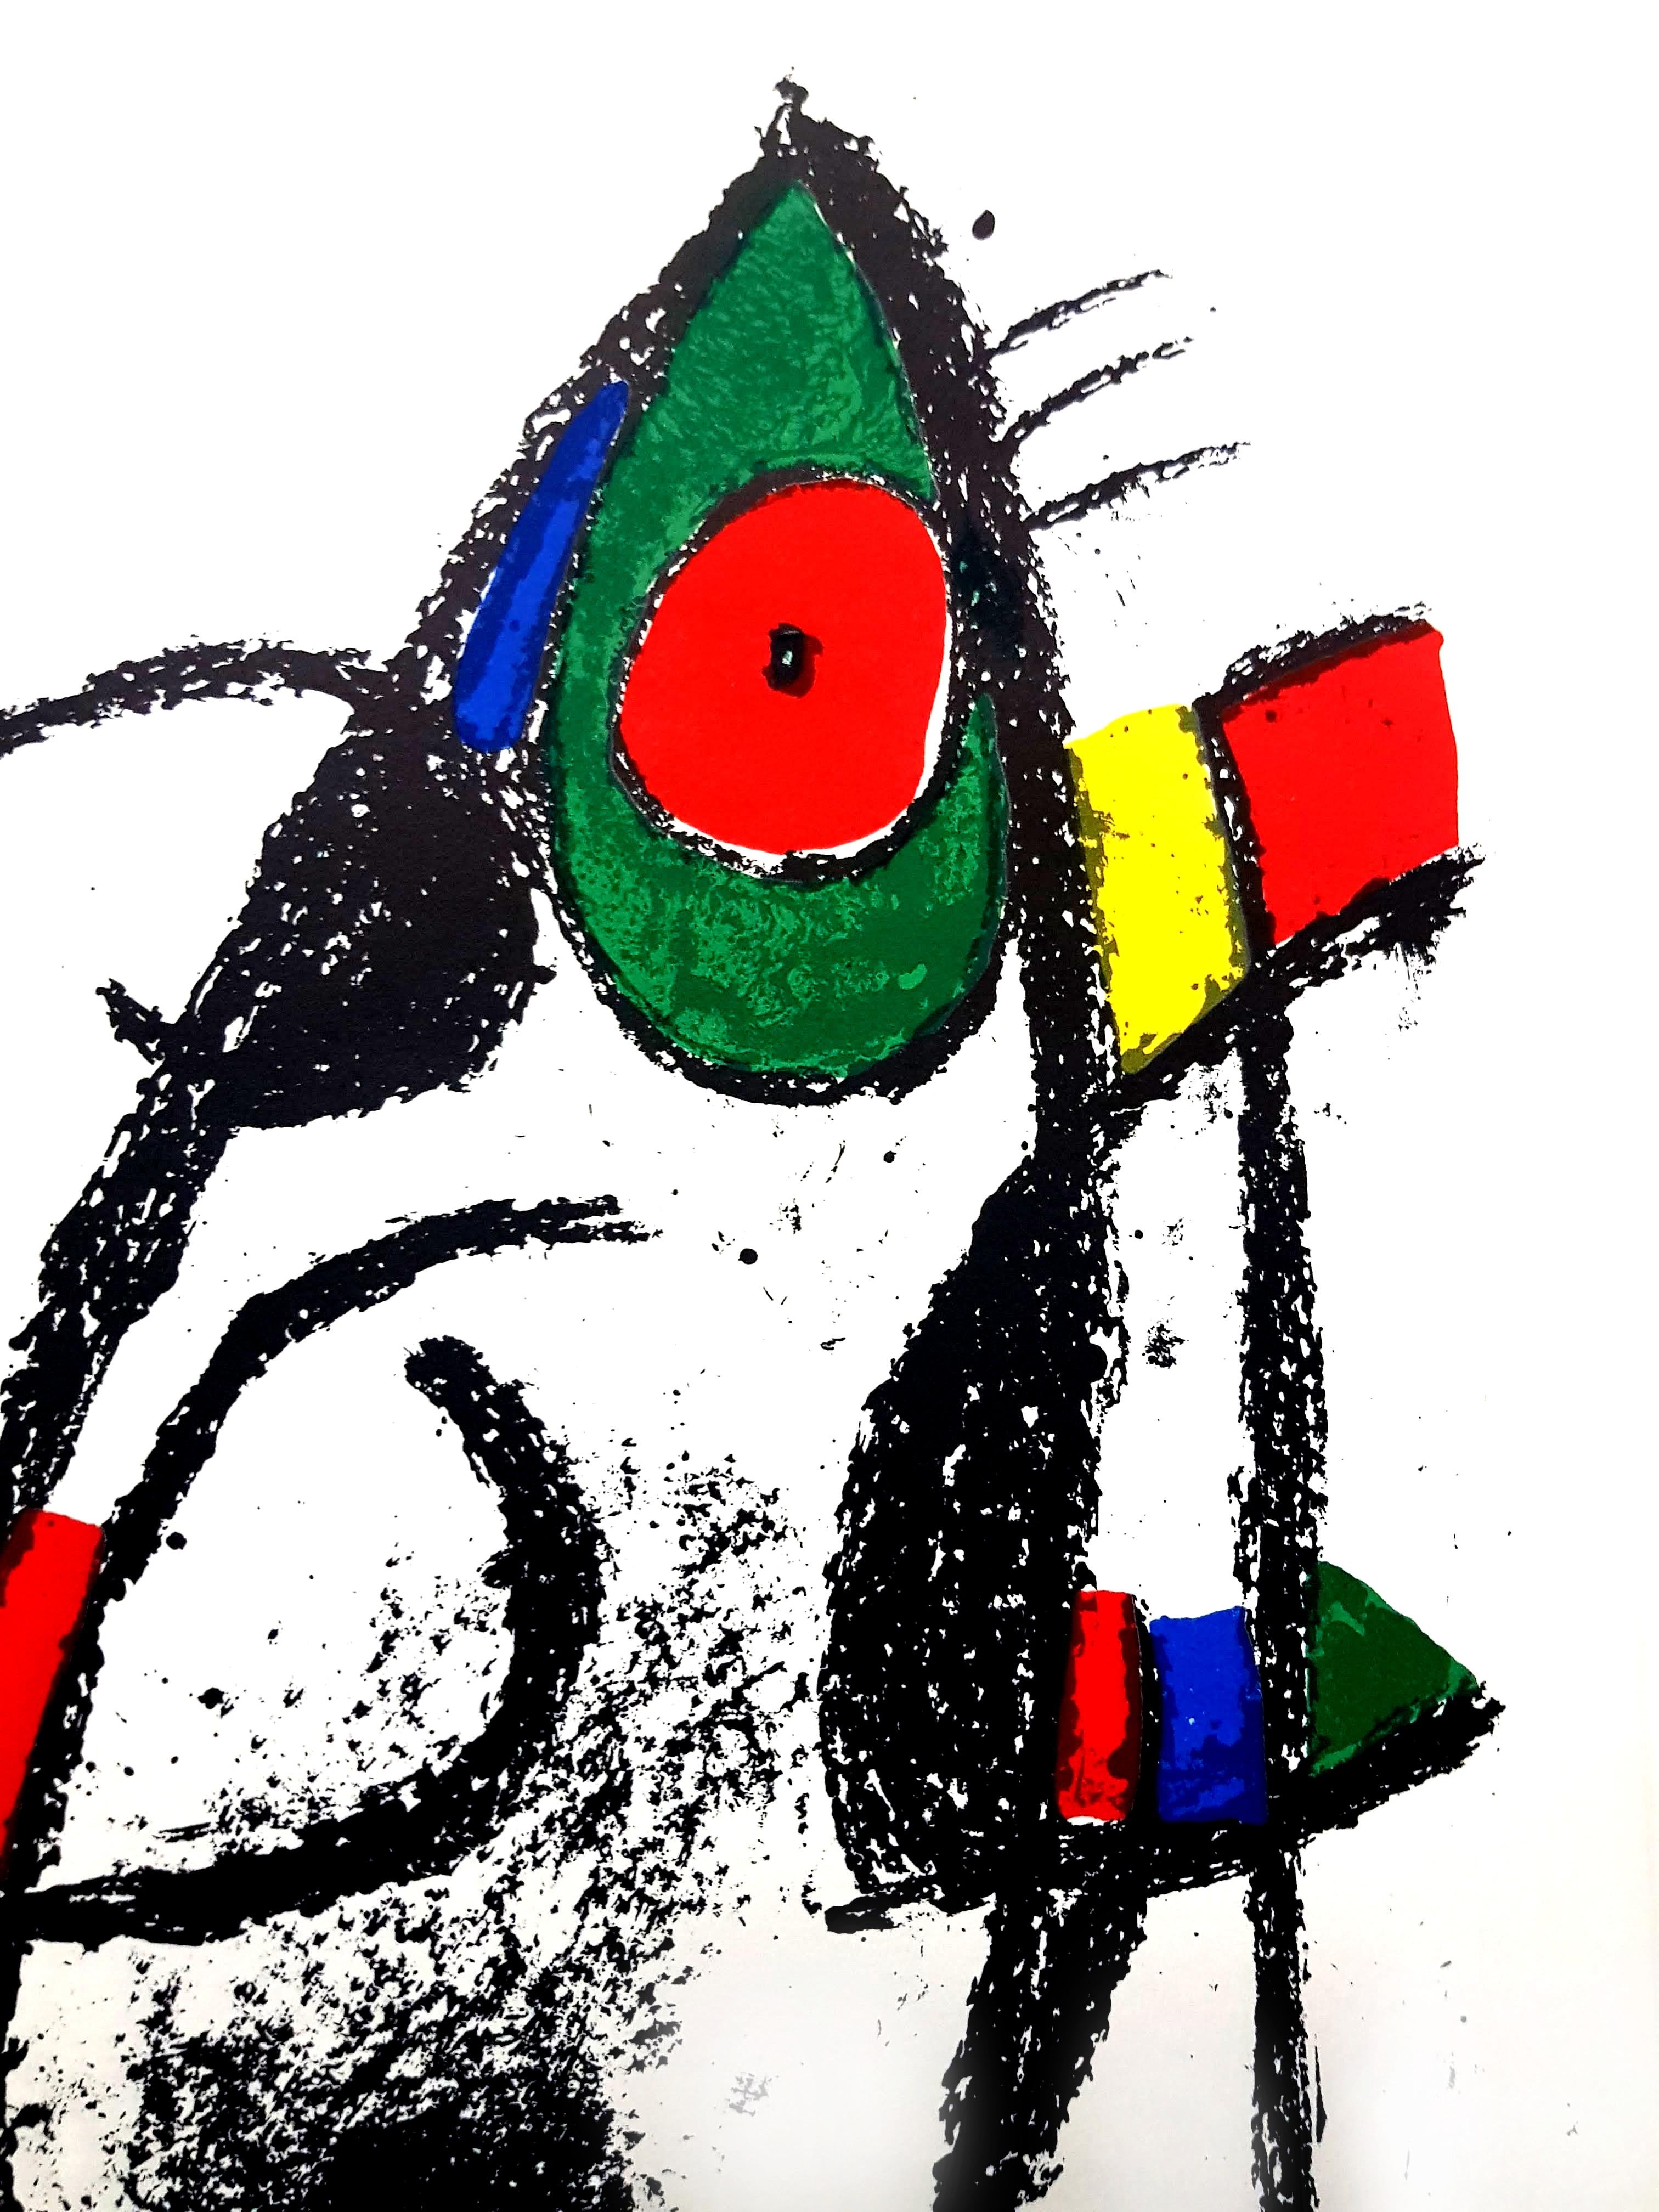 Joan Miro - Original Abstract Lithograph - Black Abstract Print by Joan Miró